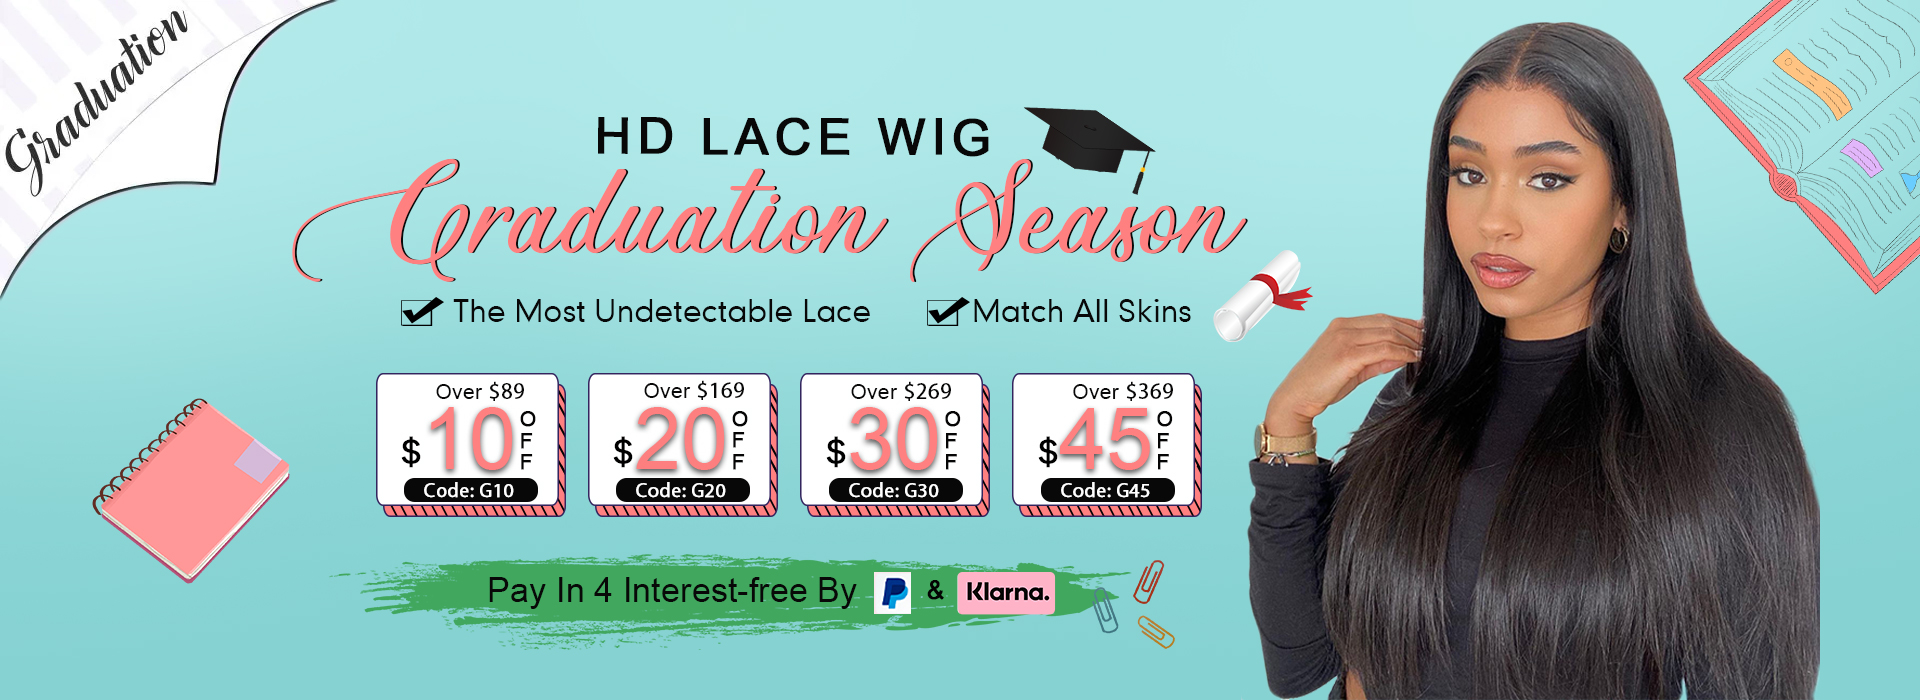 celie lace front wigs Graduation Season sale pc